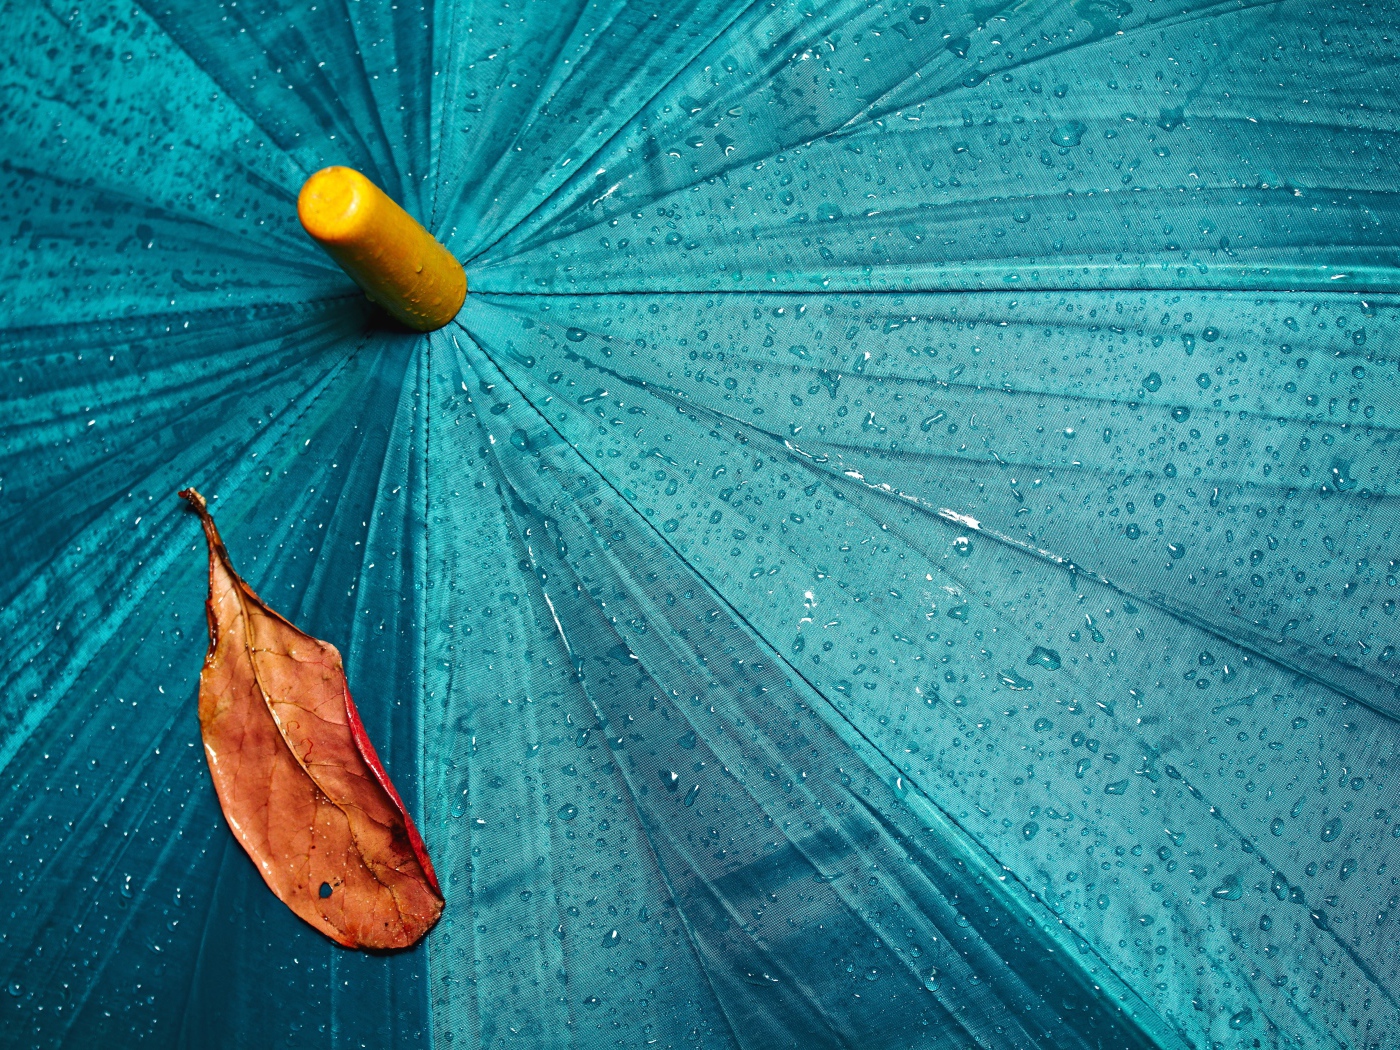 A yellow leaf lies on a blue wet umbrella